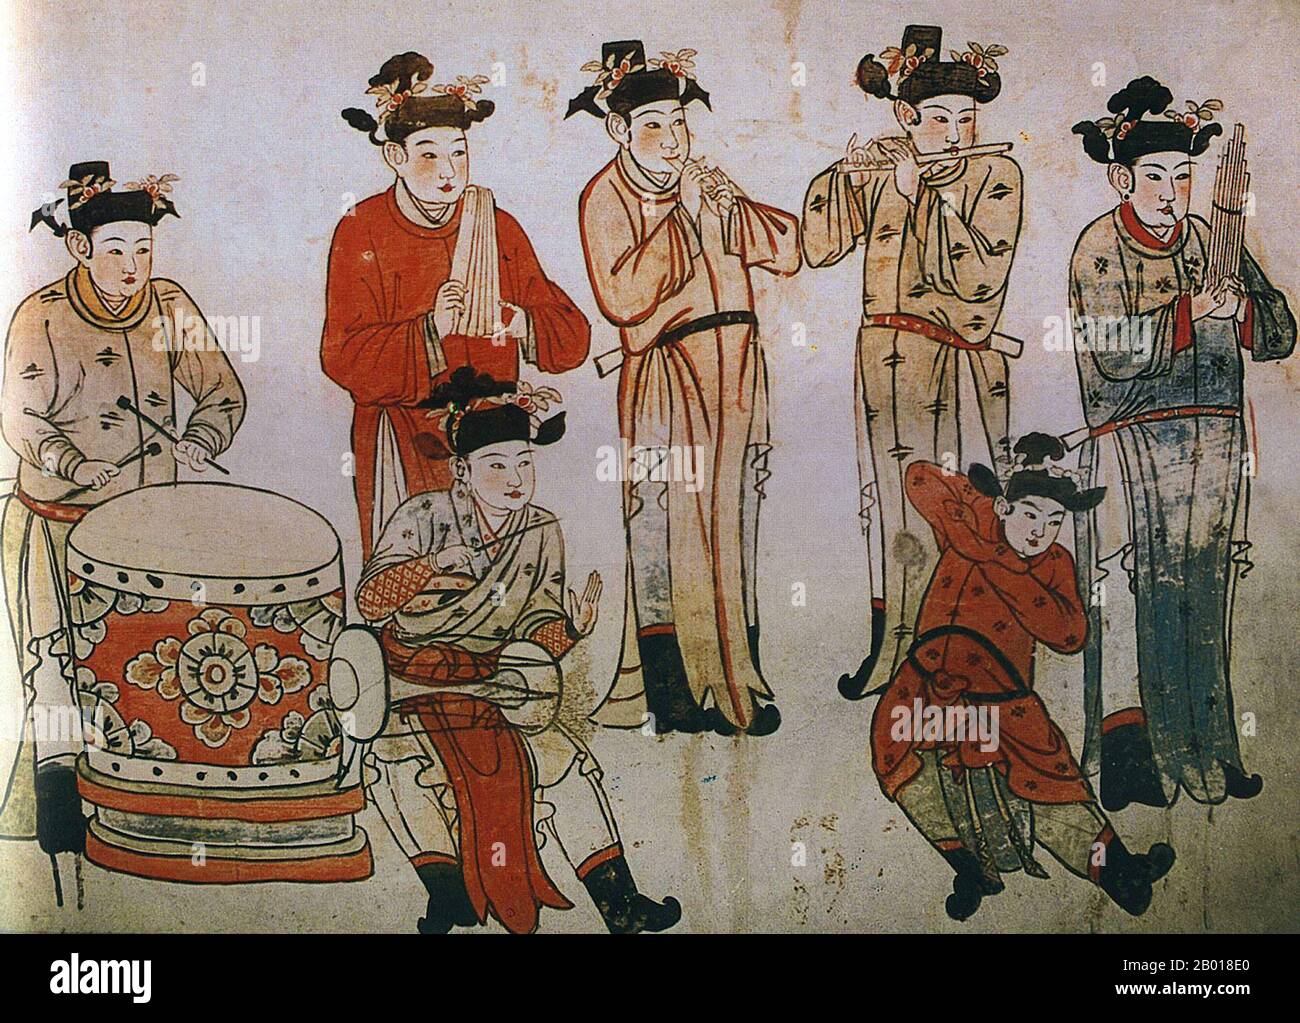 Cina: Musicisti e ballerino. Murale nella tomba di Zhang Wenzao, Xuanhua, Hebei, Dinastia Liao (1093-1117). La dinastia di Liao, conosciuta anche come l'Impero Khitan, era uno stato che dominava le regioni di Manciuria, Mongolia, e parti della Cina settentrionale propriamente detta. Fu fondata dal clan Yelü del popolo Khitano nello stesso anno in cui la dinastia Tang crollò (907), anche se il suo primo sovrano, Yelü Abaoji (Yaruud Ambagai Khan), non dichiarò un nome di epoca fino al 916. Foto Stock